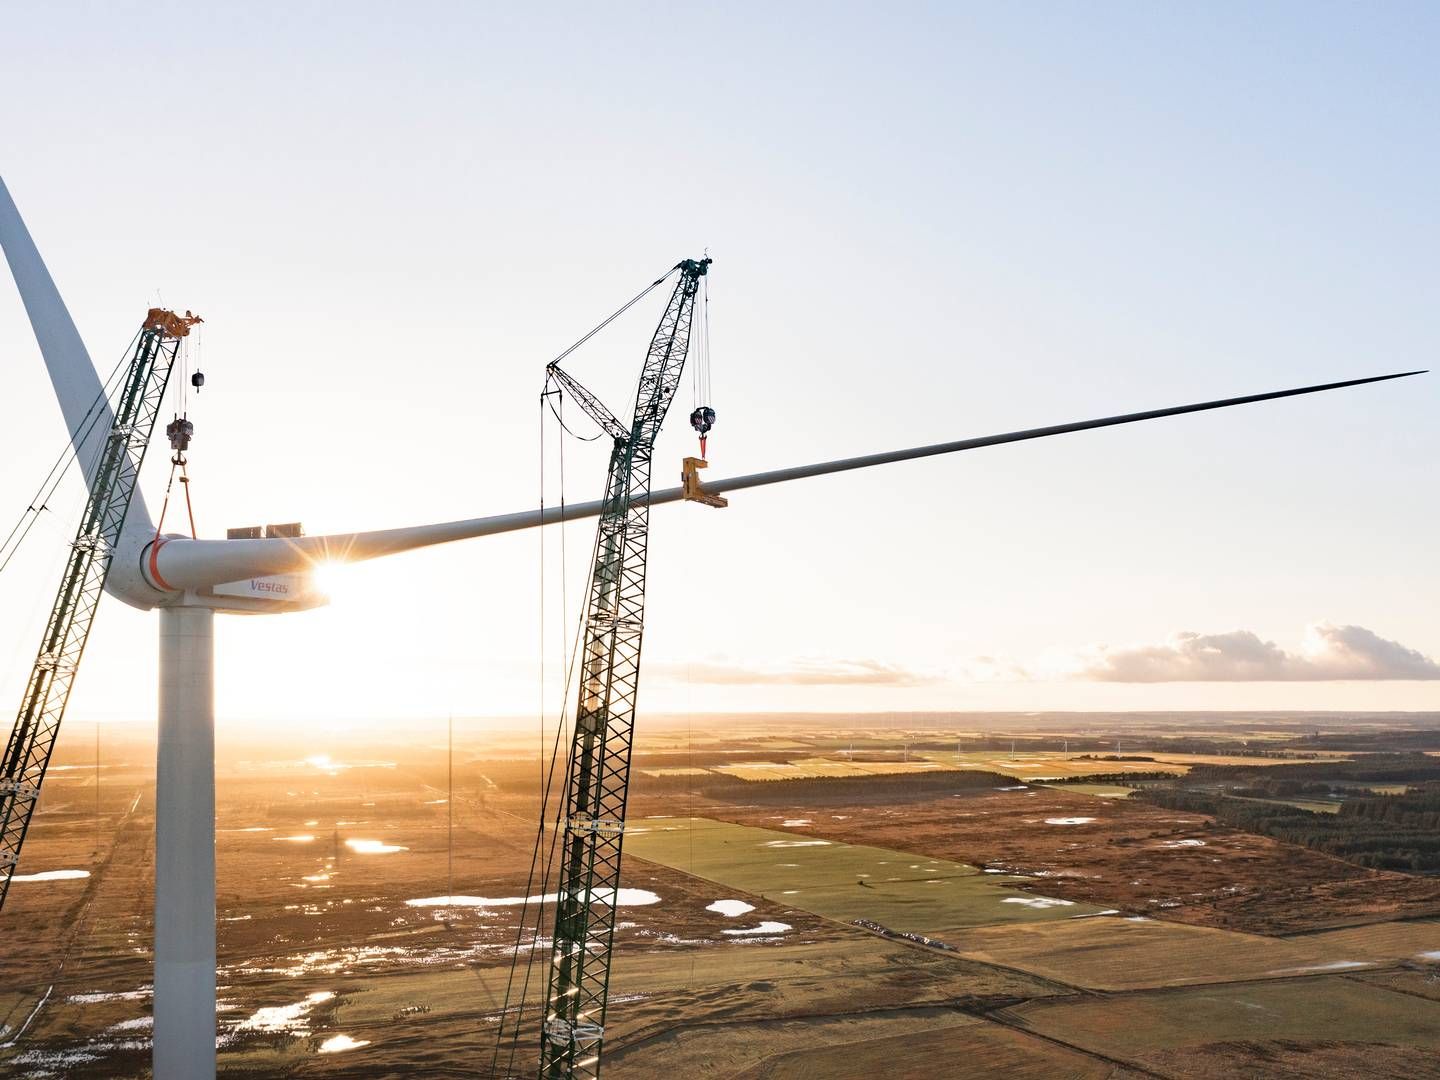 Vindmølleproducenten Vestas tager igen topplaceringen som største globale vindmølleproducent. | Foto: vestas